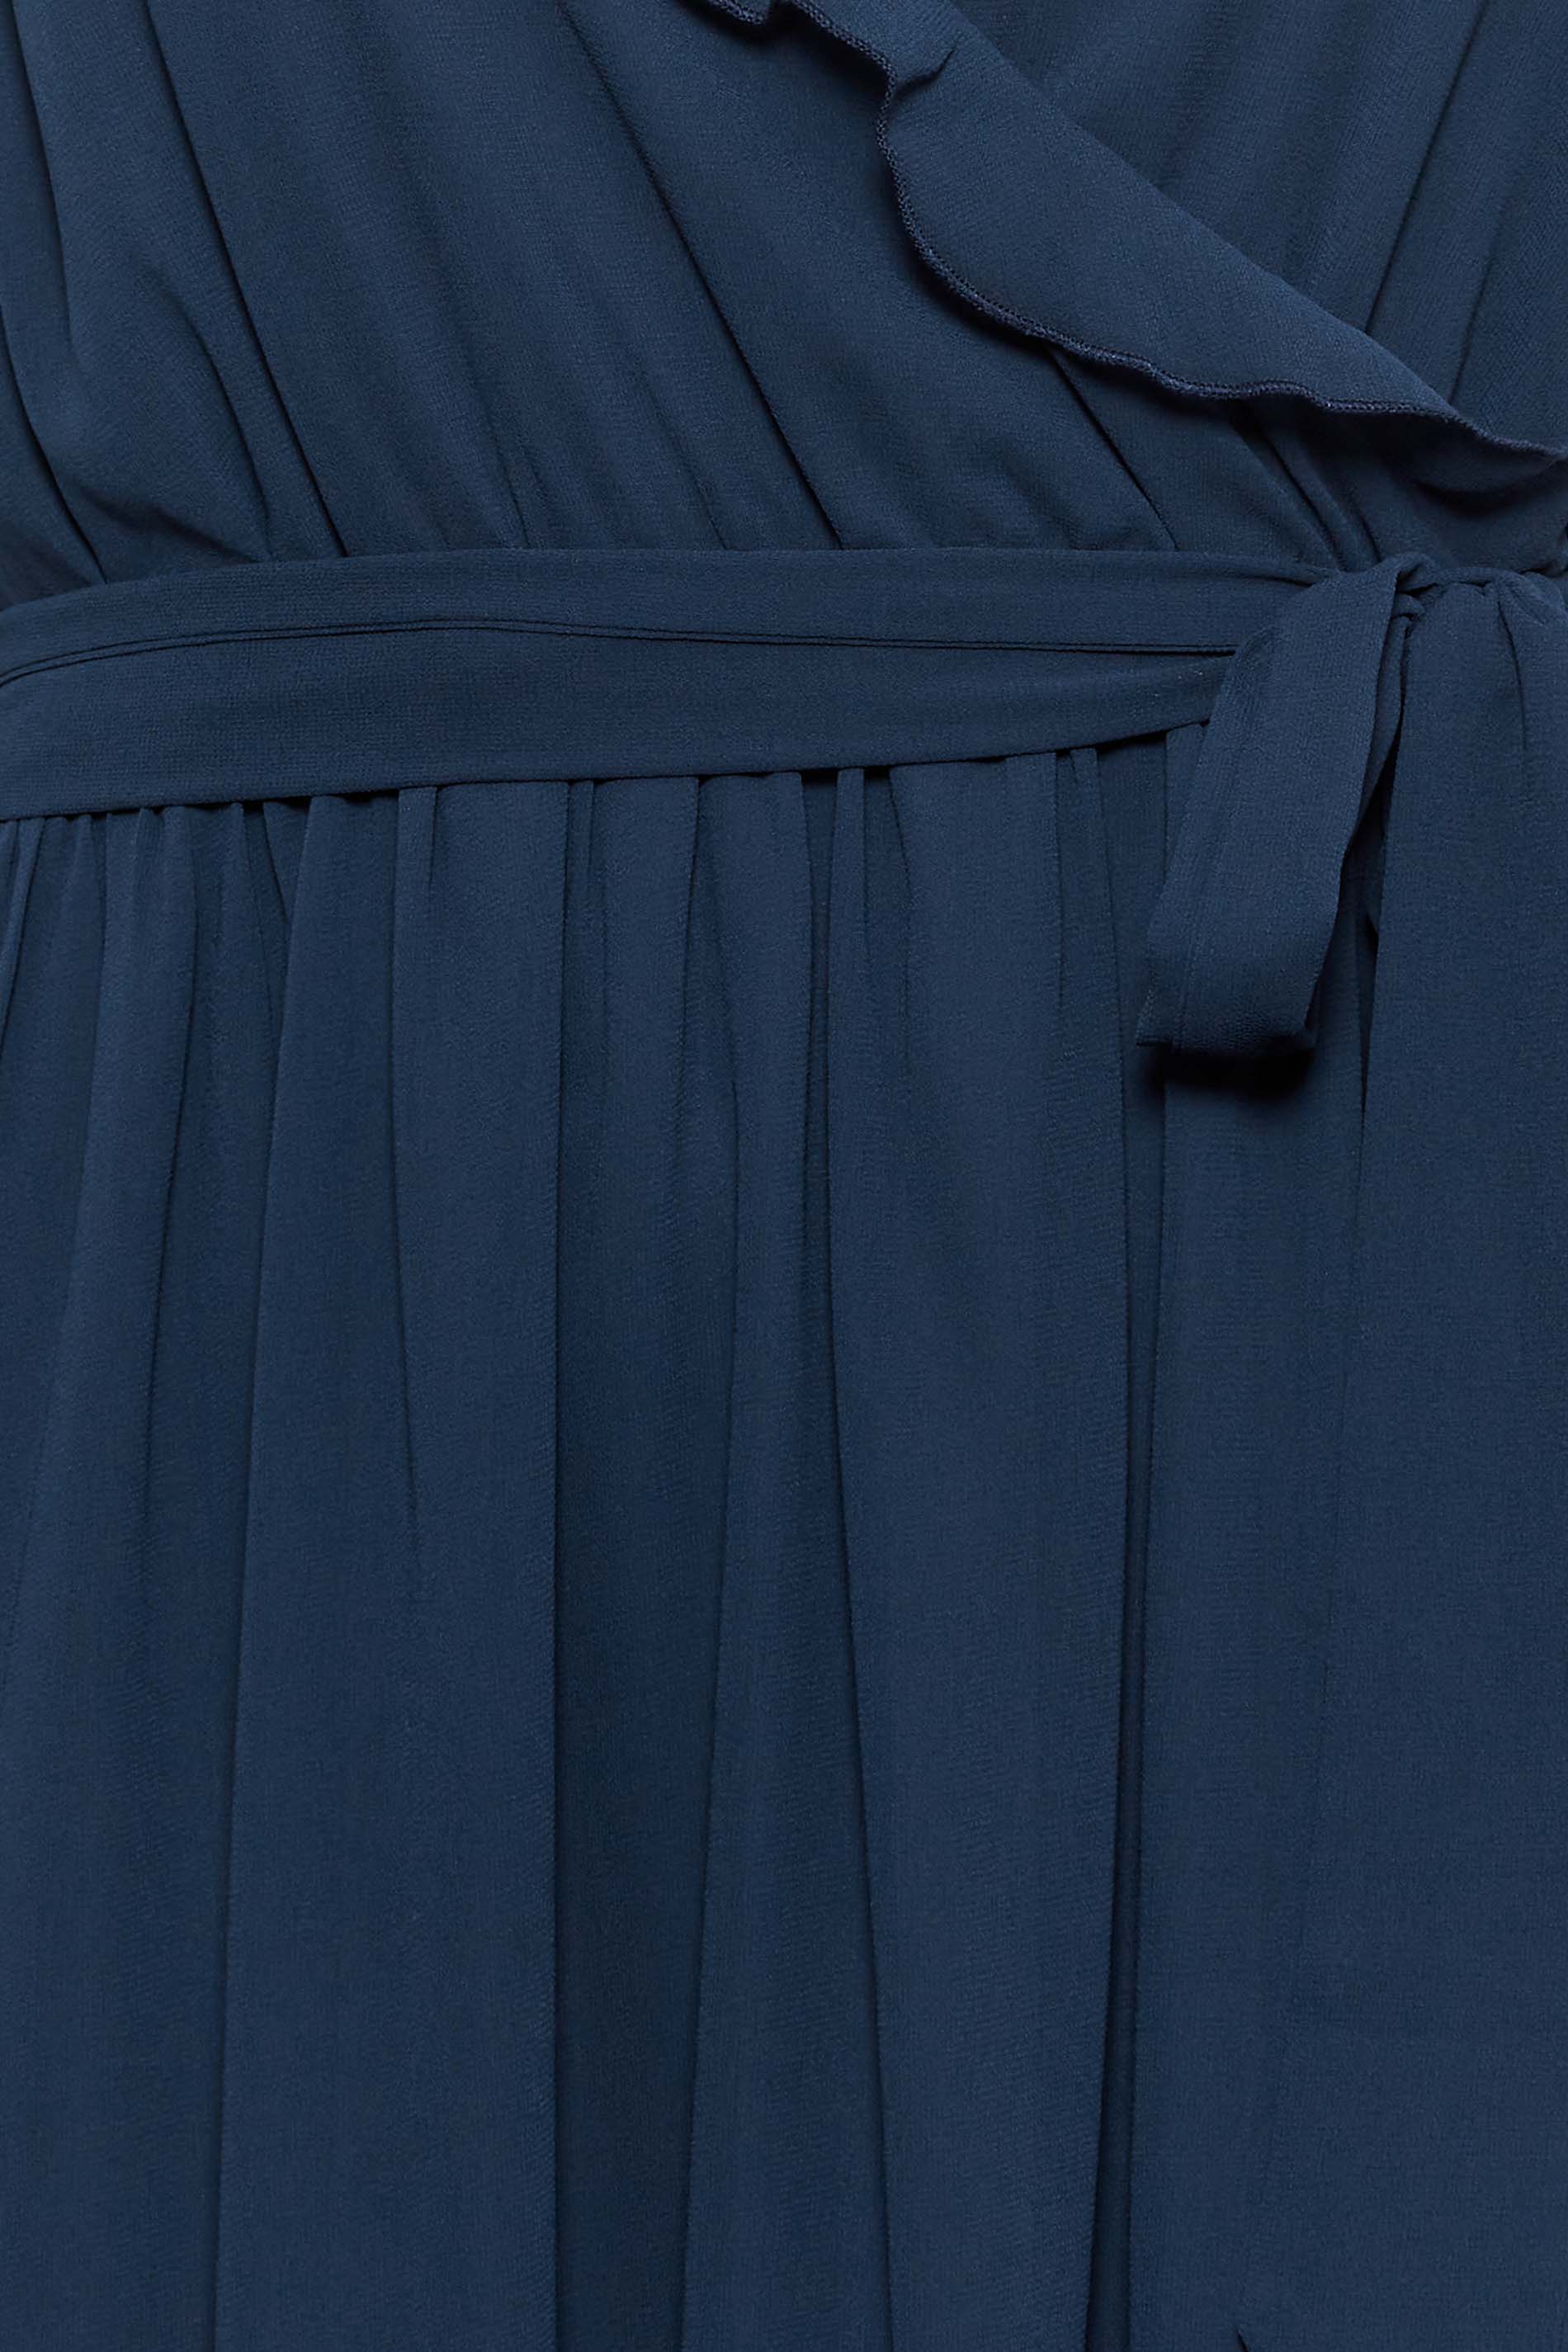 Buy Navyas Fashion Modal Loungewear Dress - Blue at Rs.1500 online